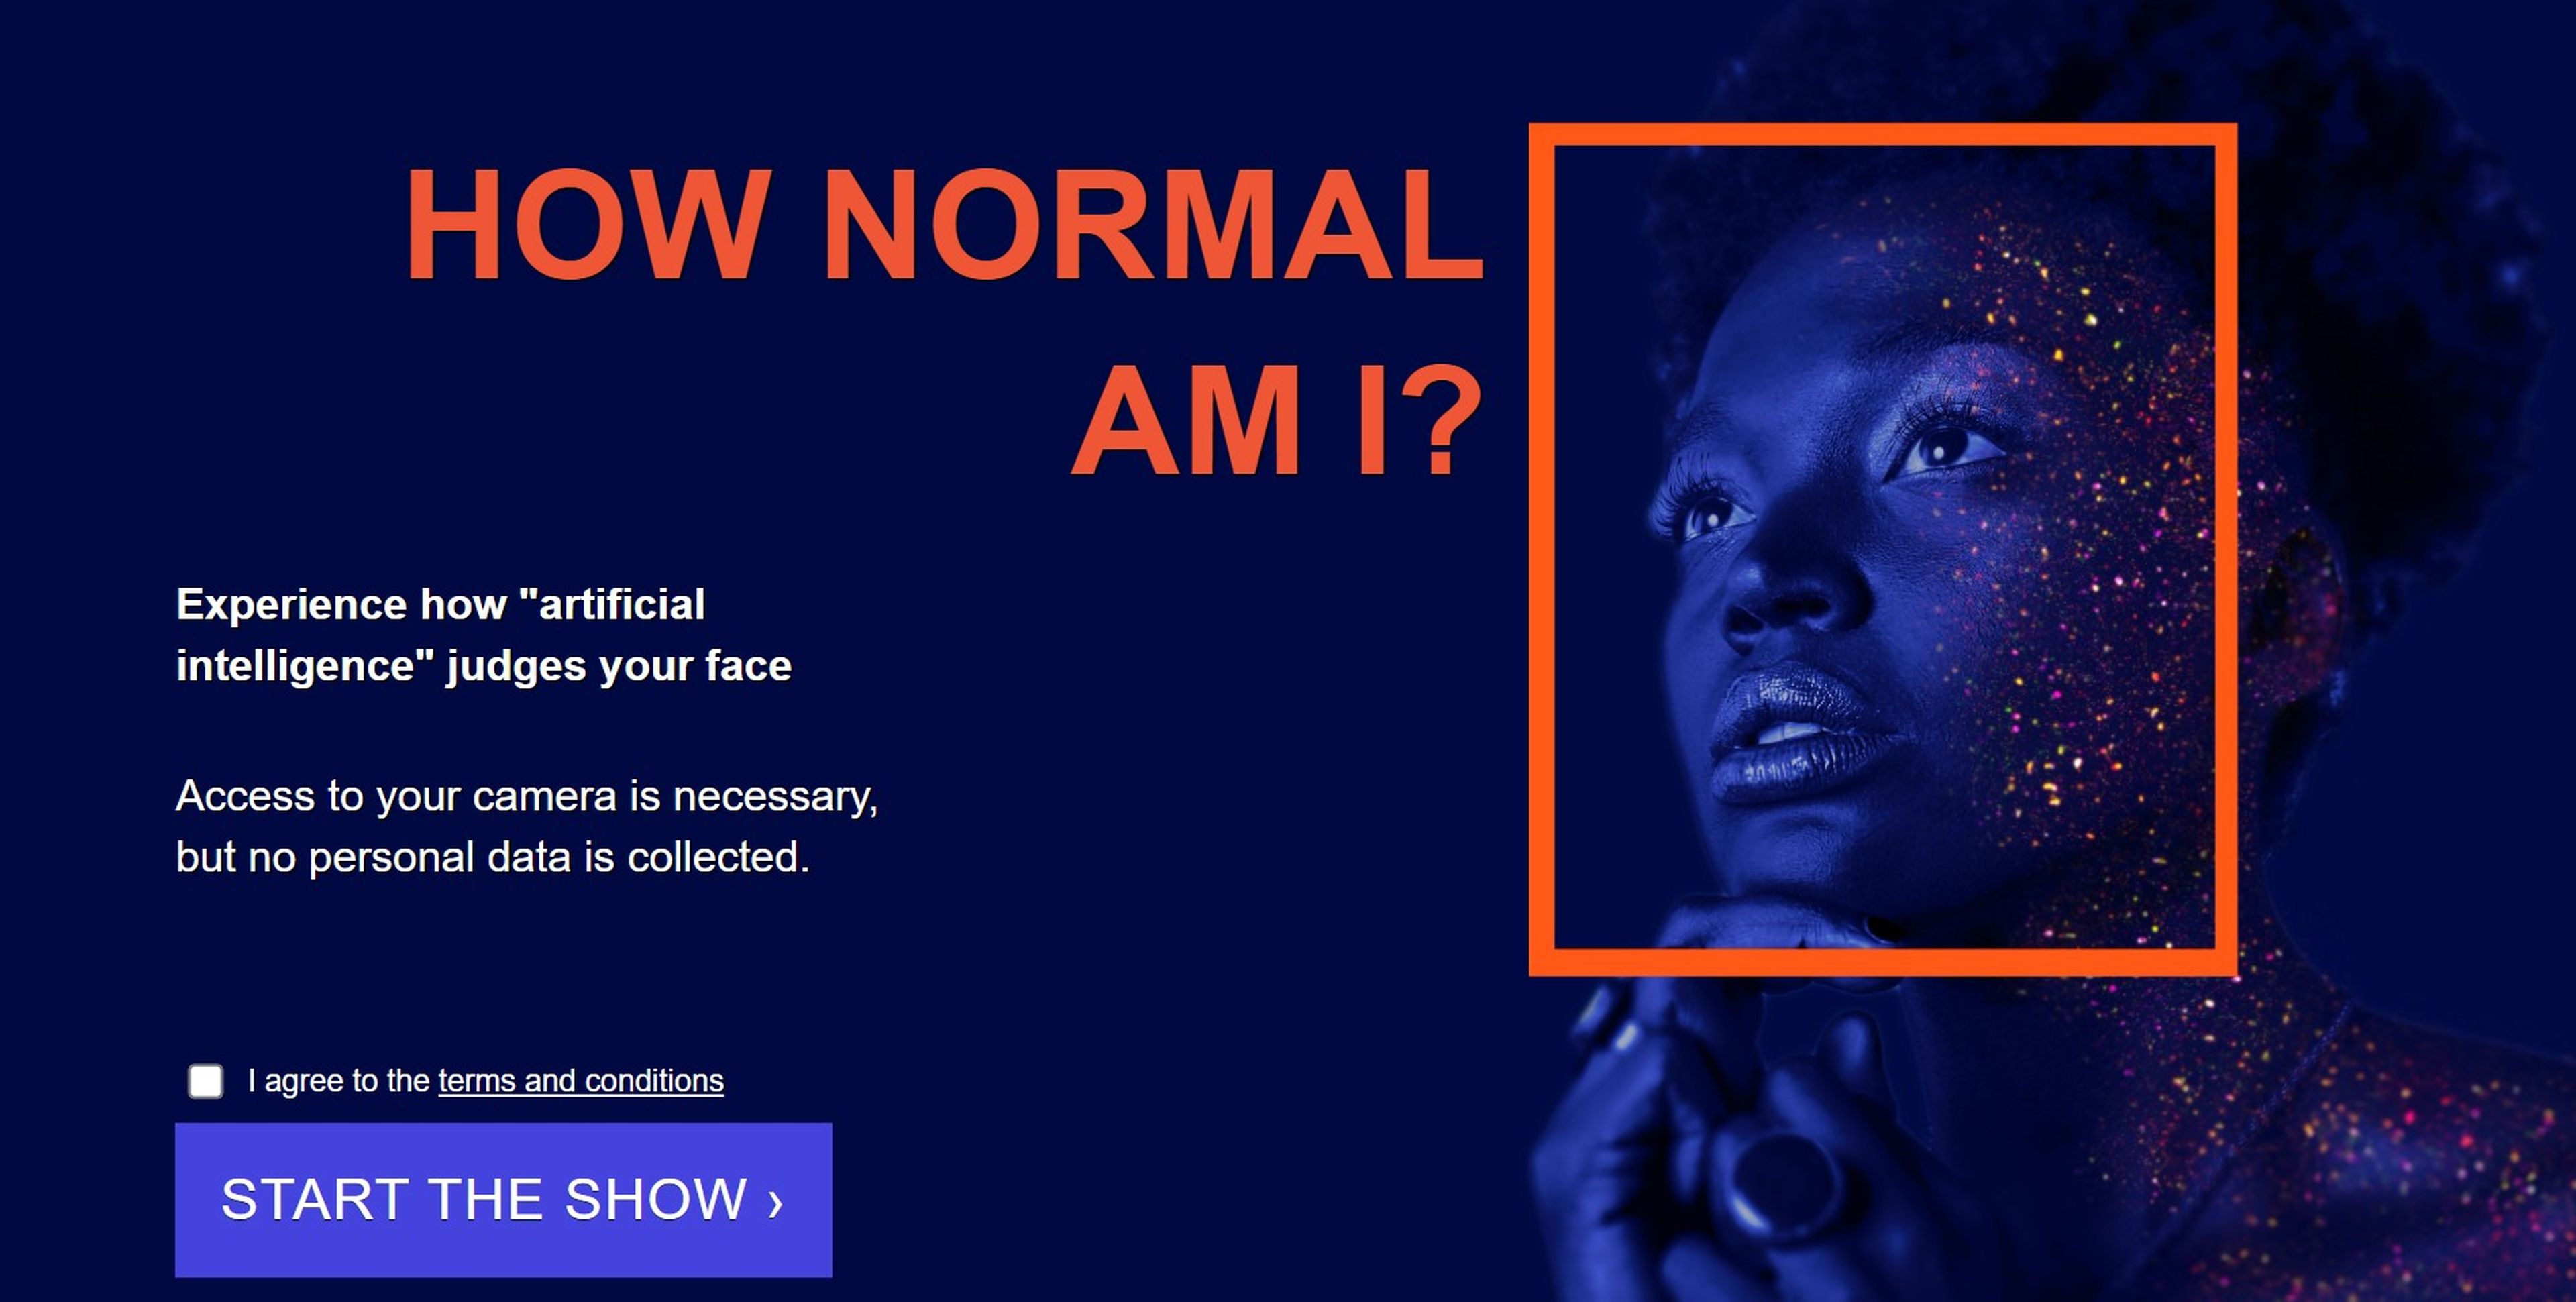 Así funciona la IA europea que juzga tu cara con un selfie: adivina tu edad y peso y te dice cómo de normal eres